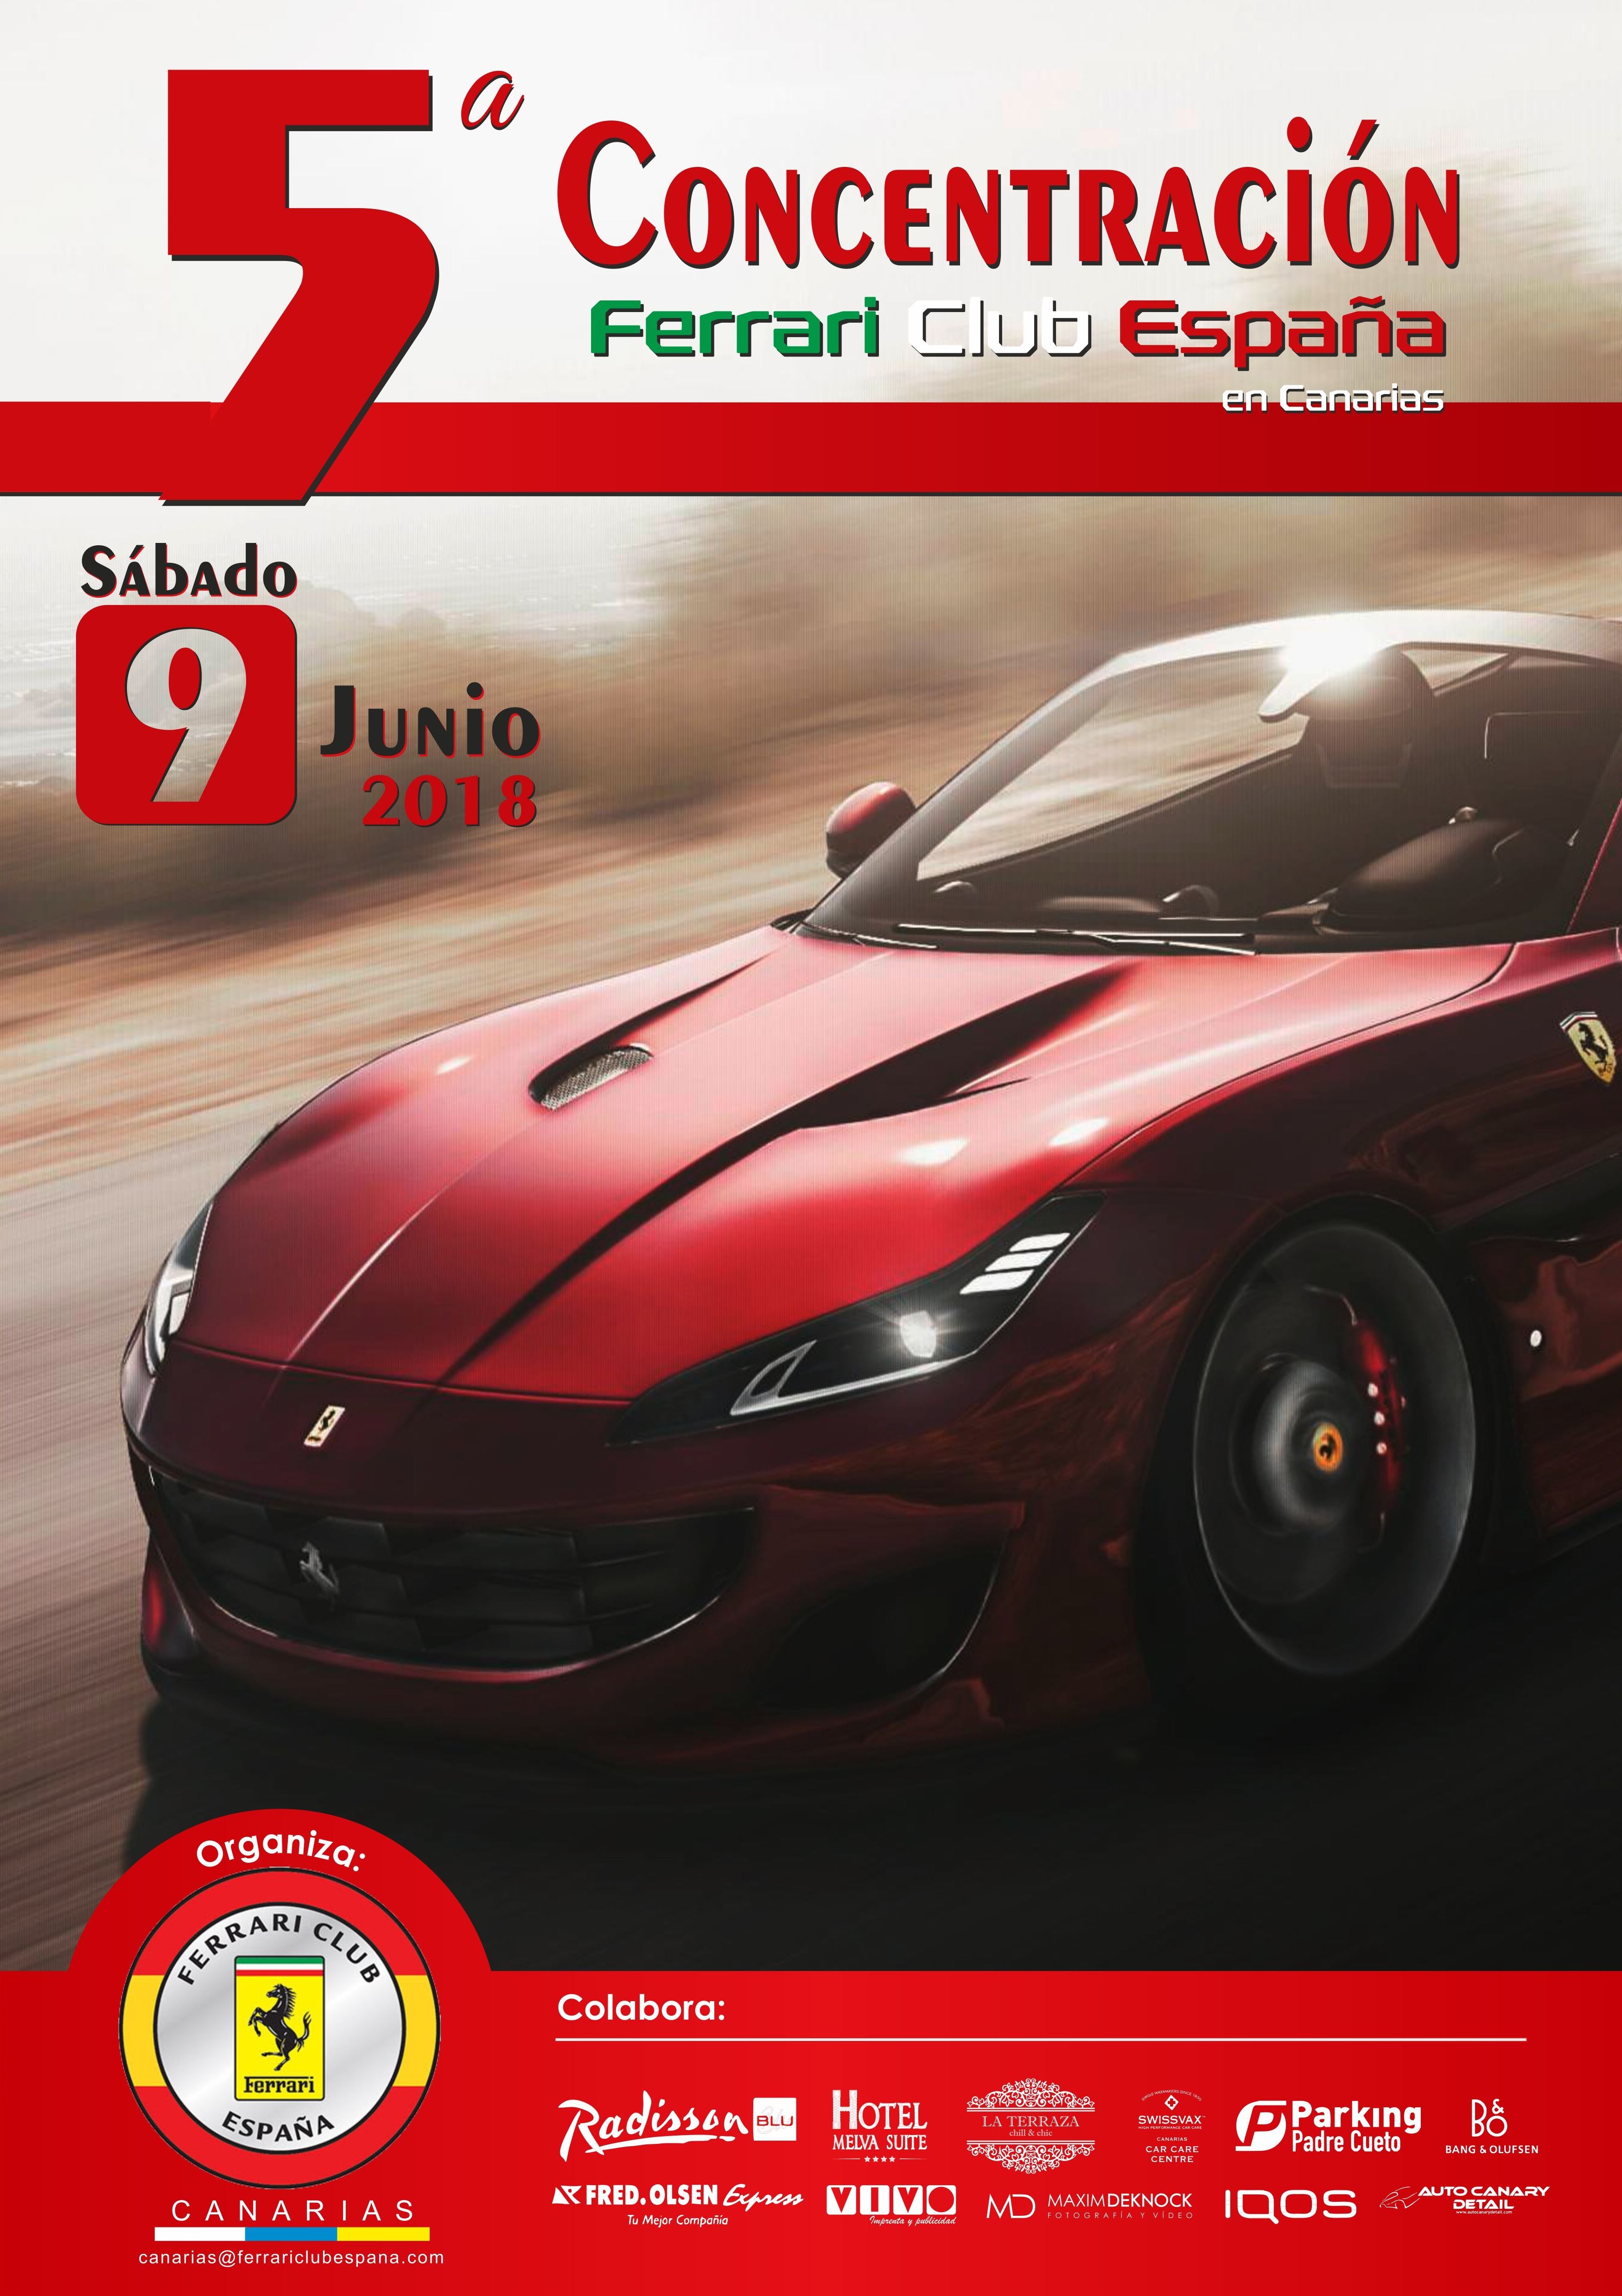 Una vez más con el Club Ferrari España